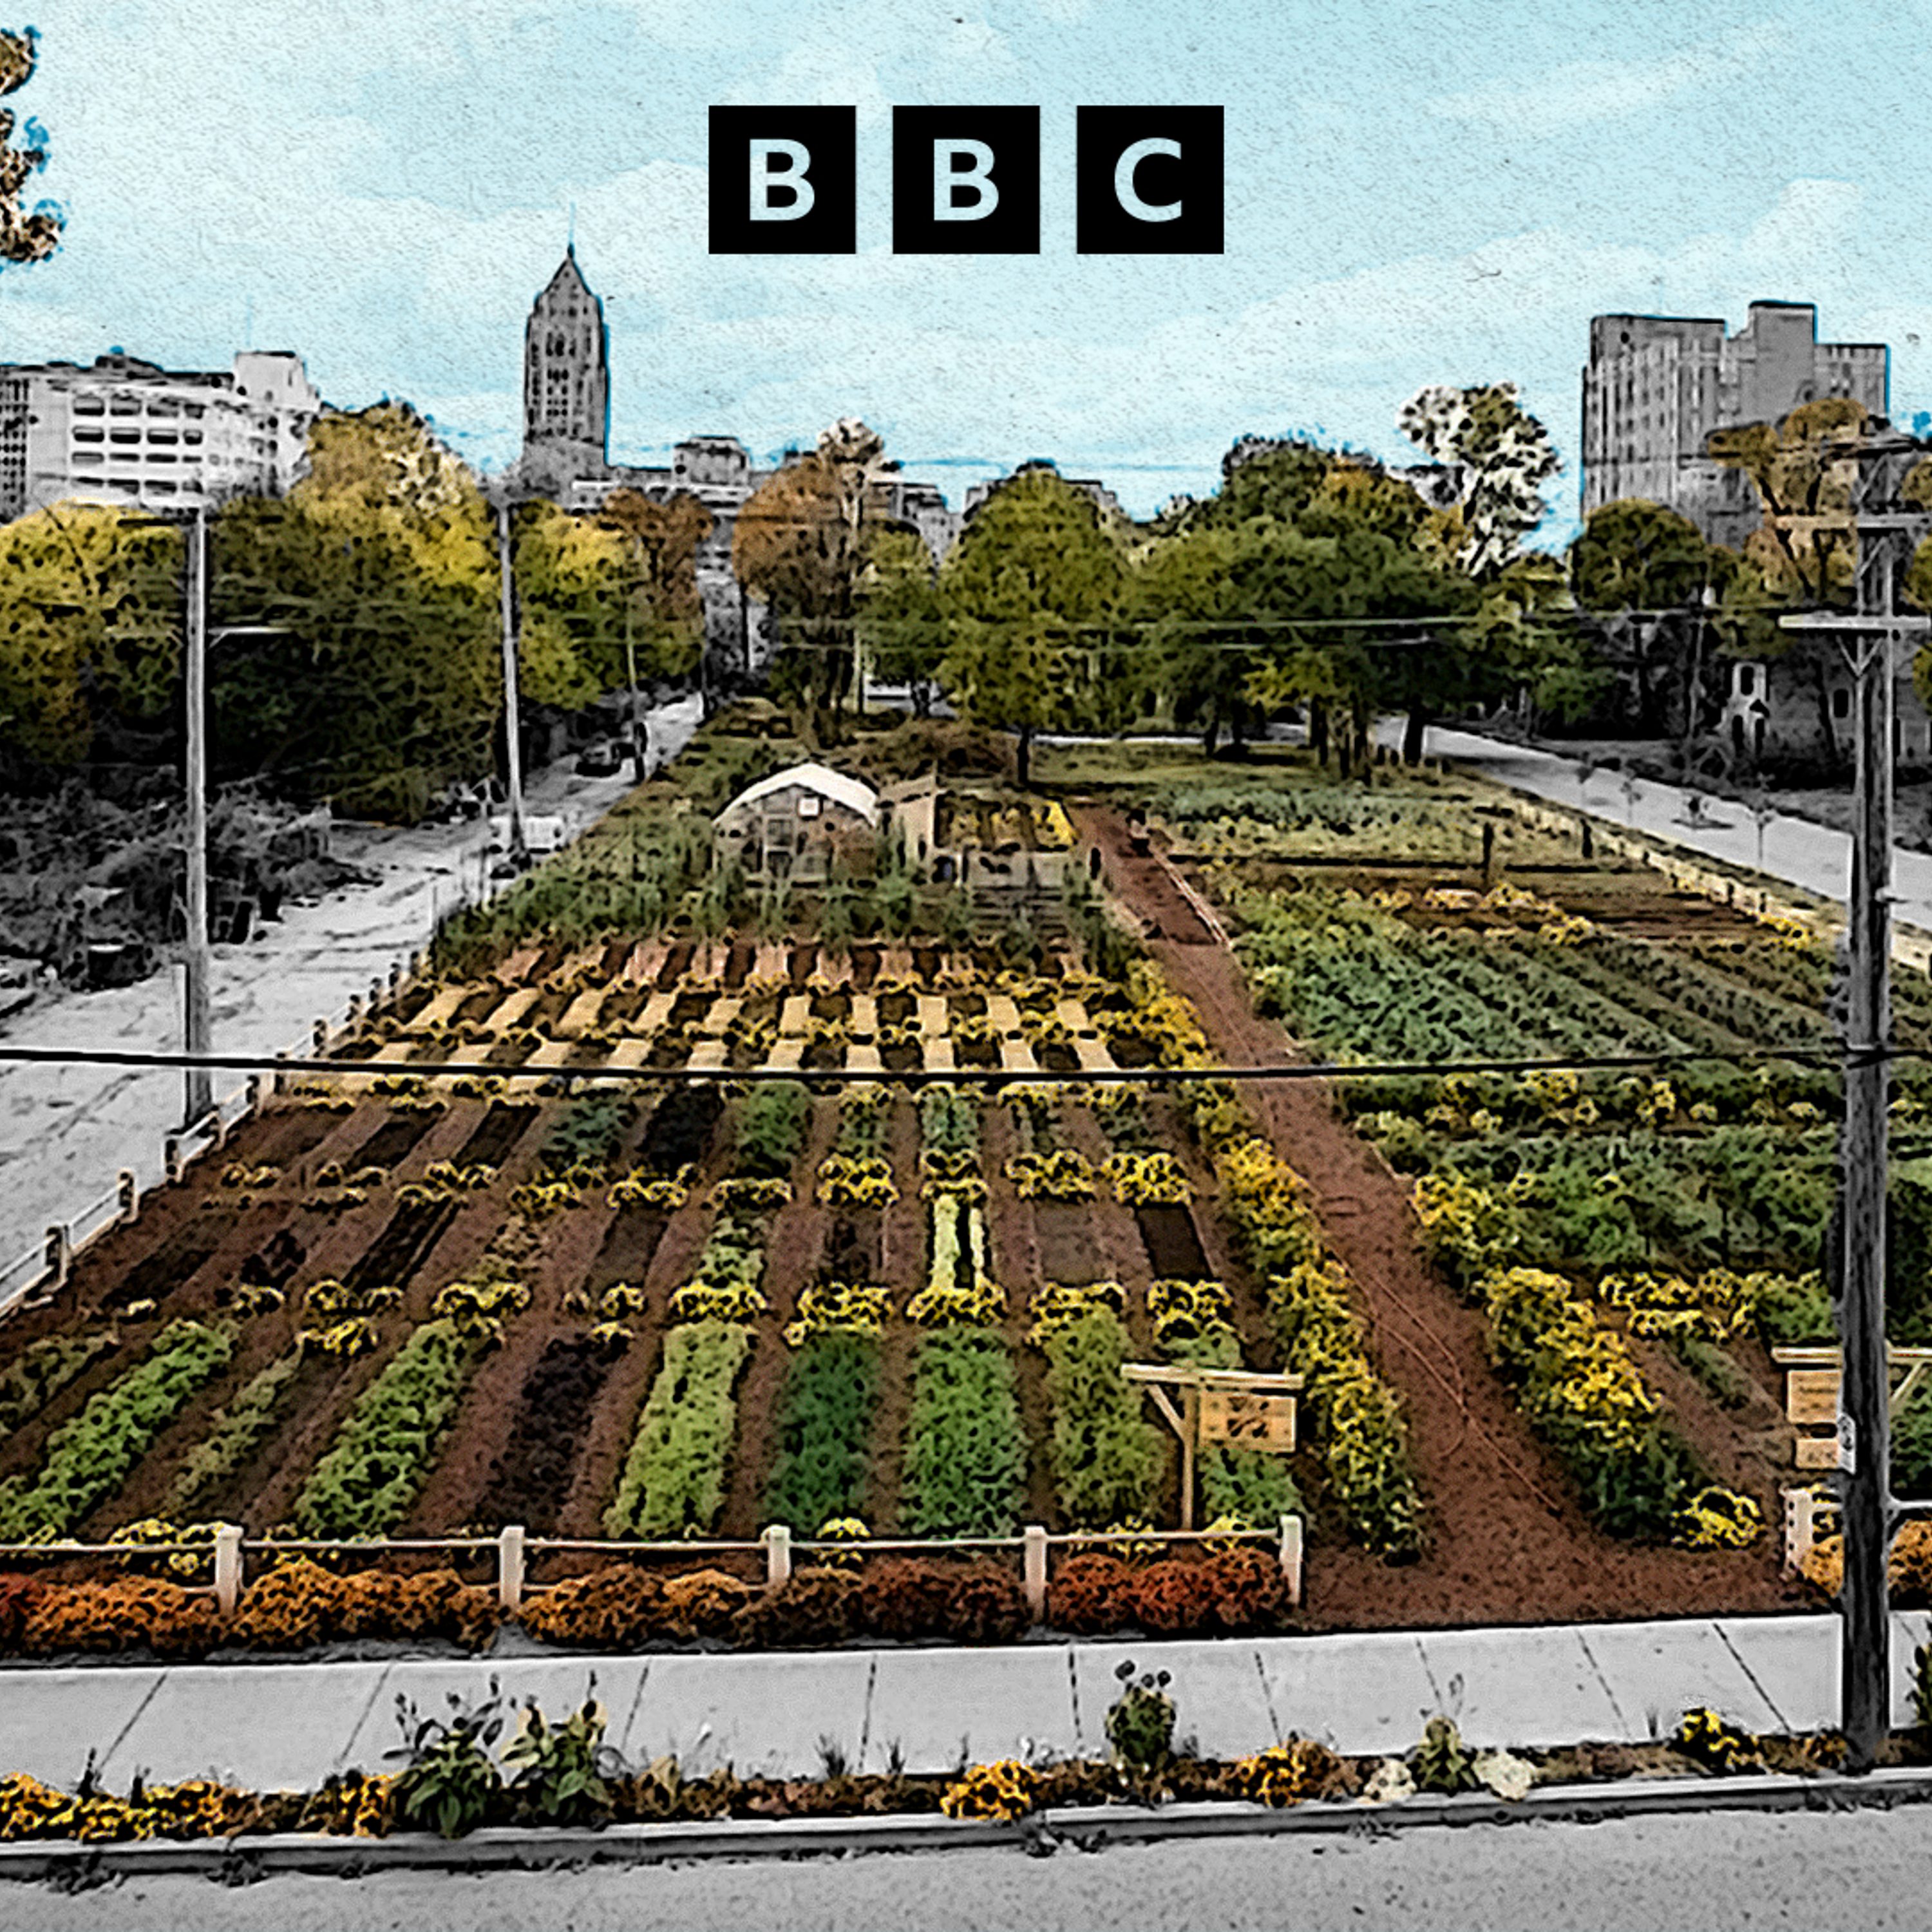 Detroit’s urban farmers